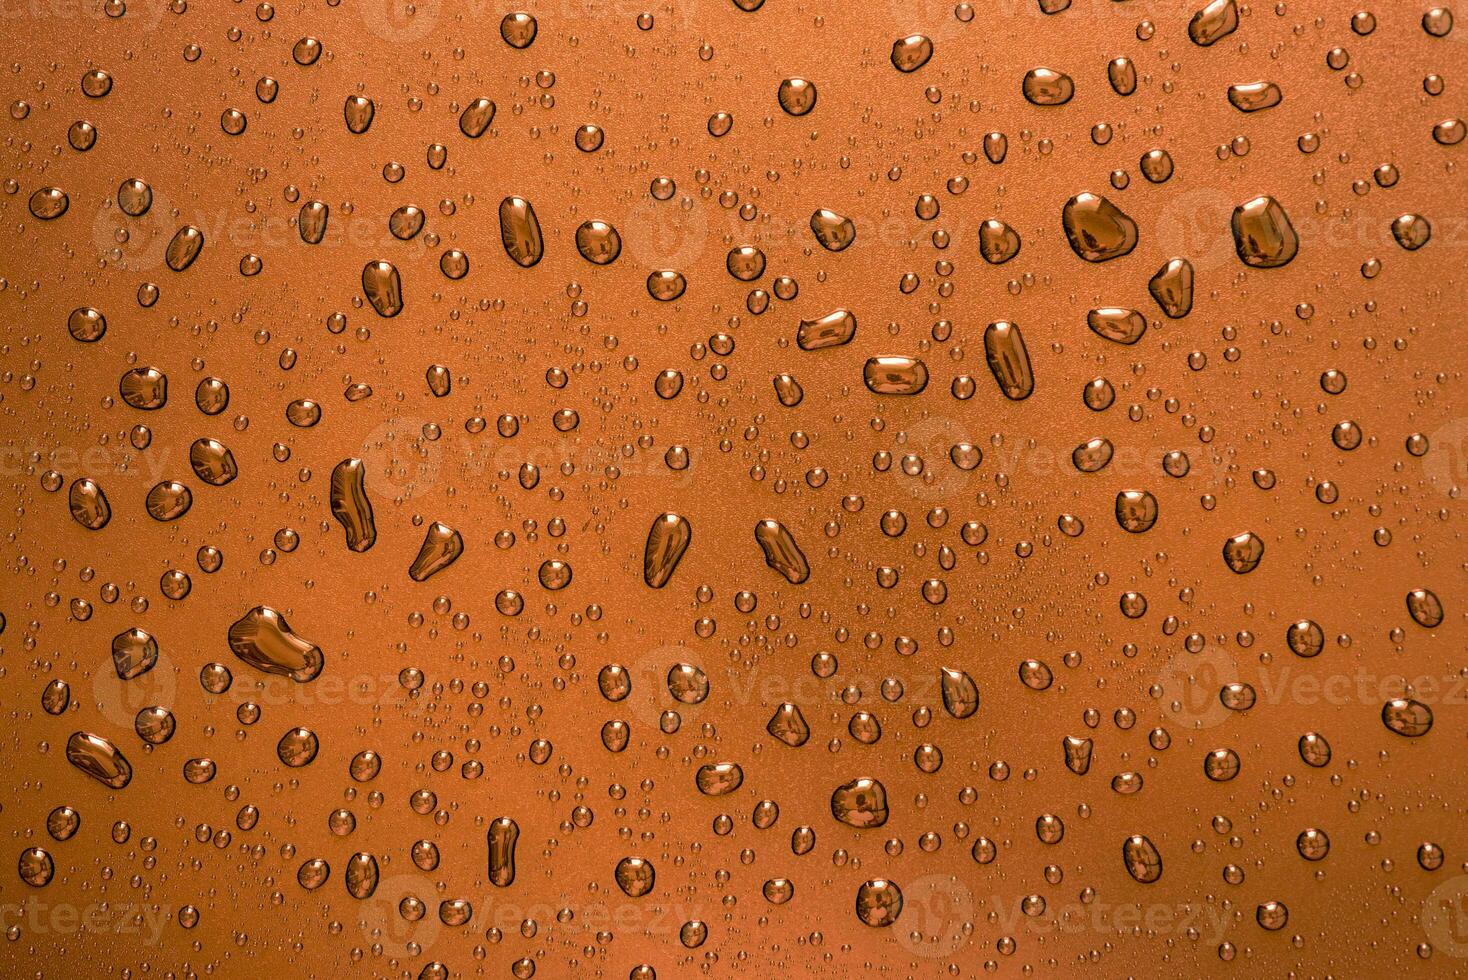 hielo frío agua gotas en naranja vaso resumen antecedentes foto